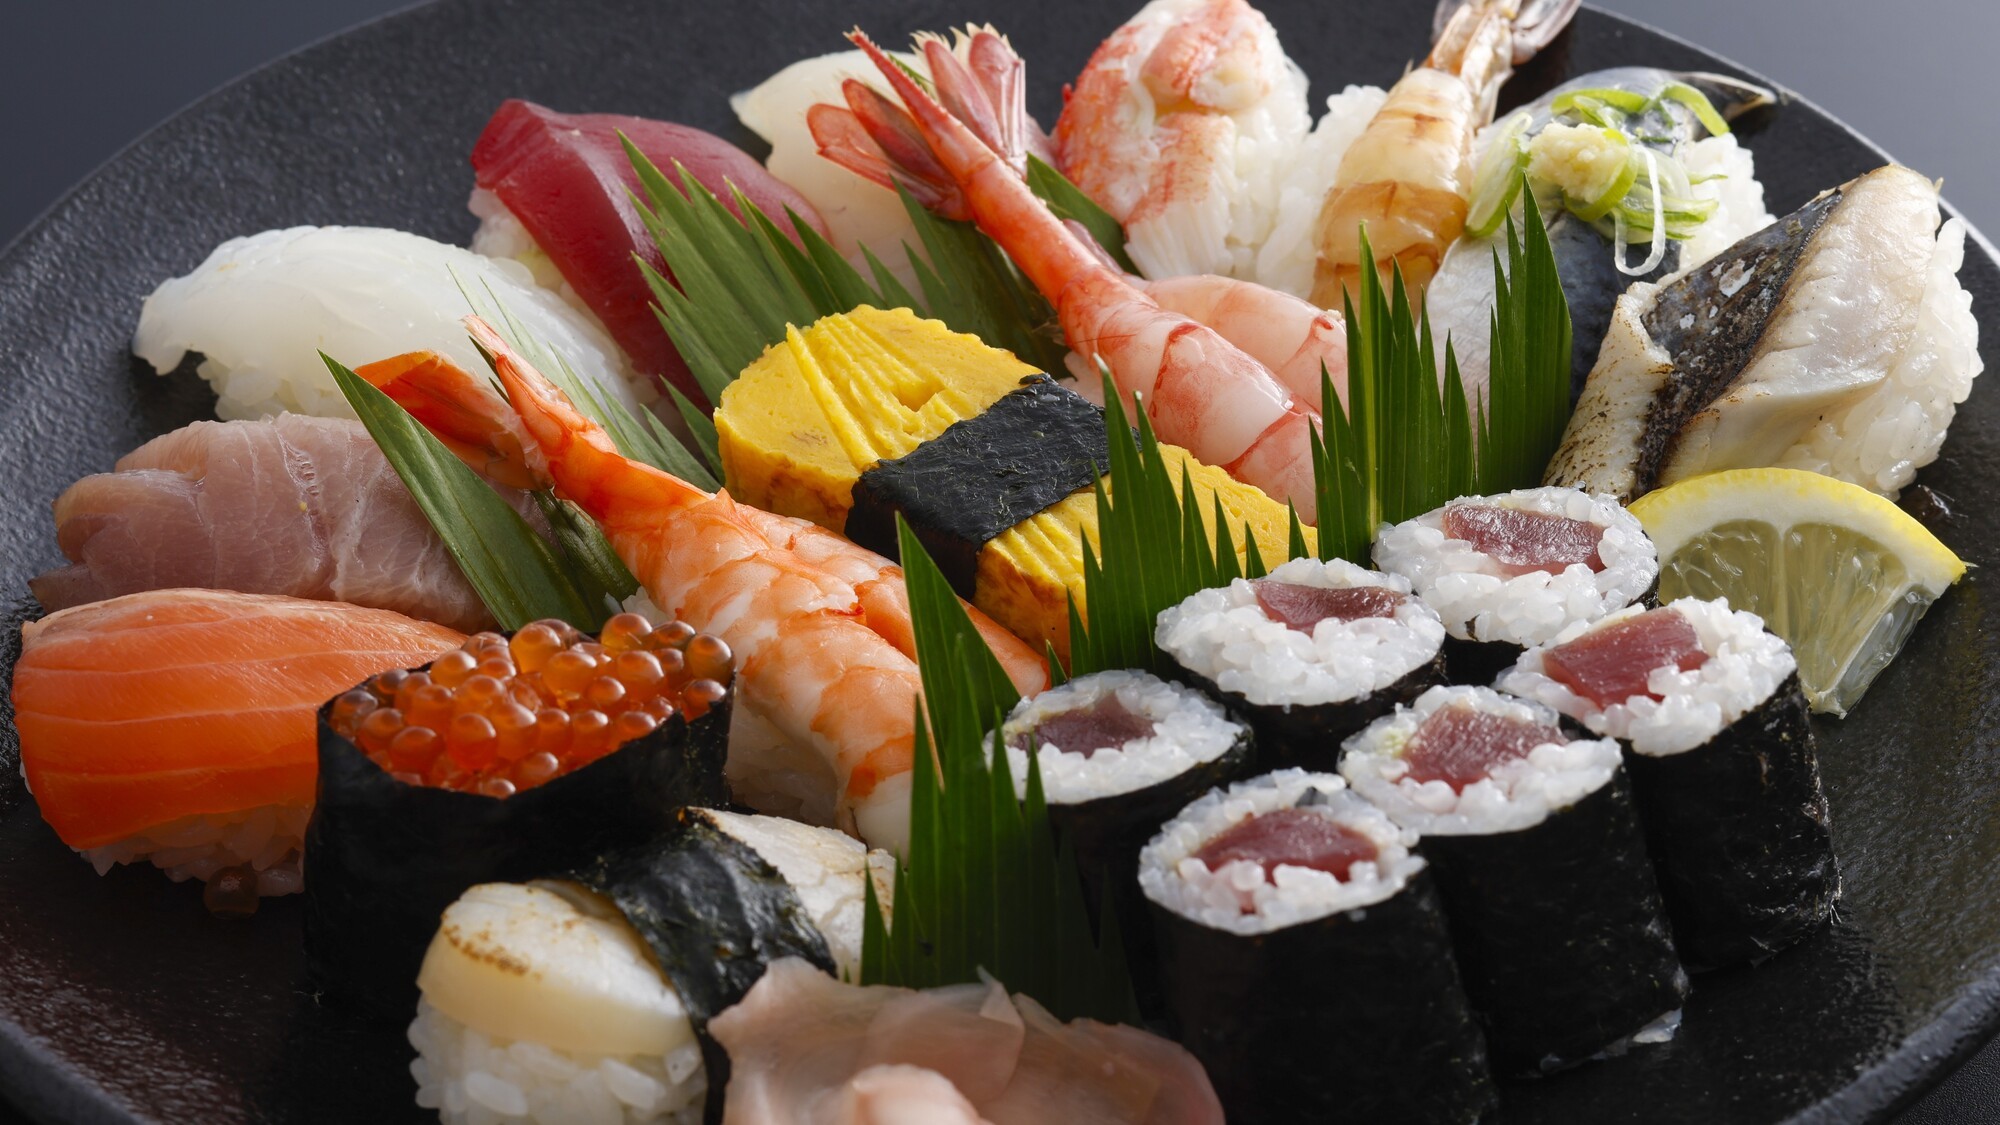 旬の魚介を堪能するお寿司の盛り合わせ